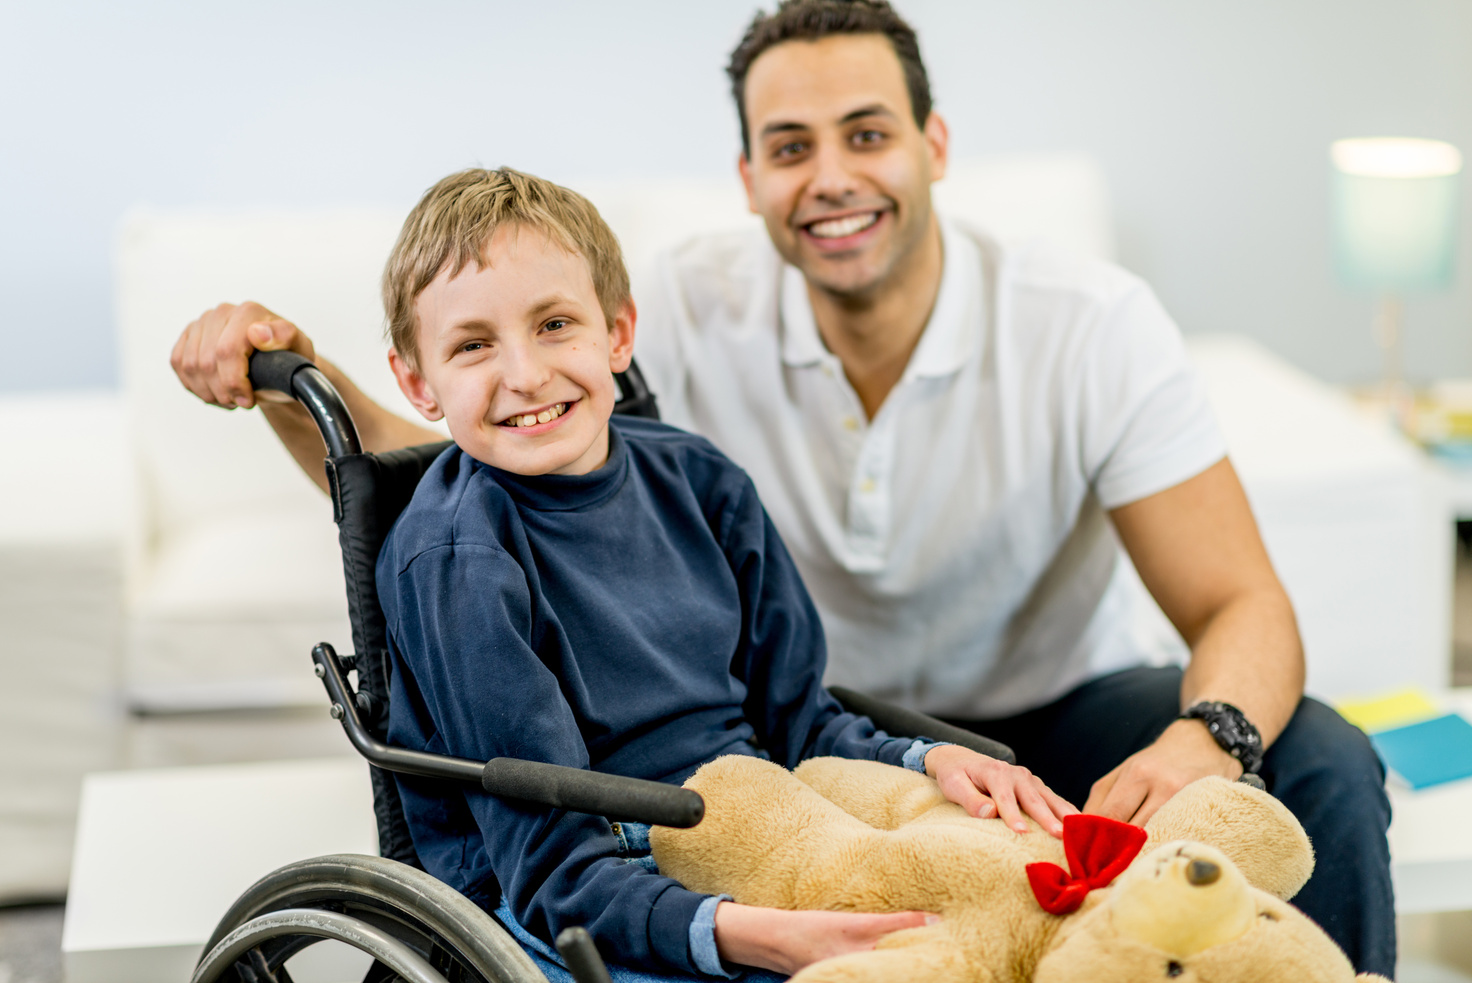 Boy with Developmental Disability